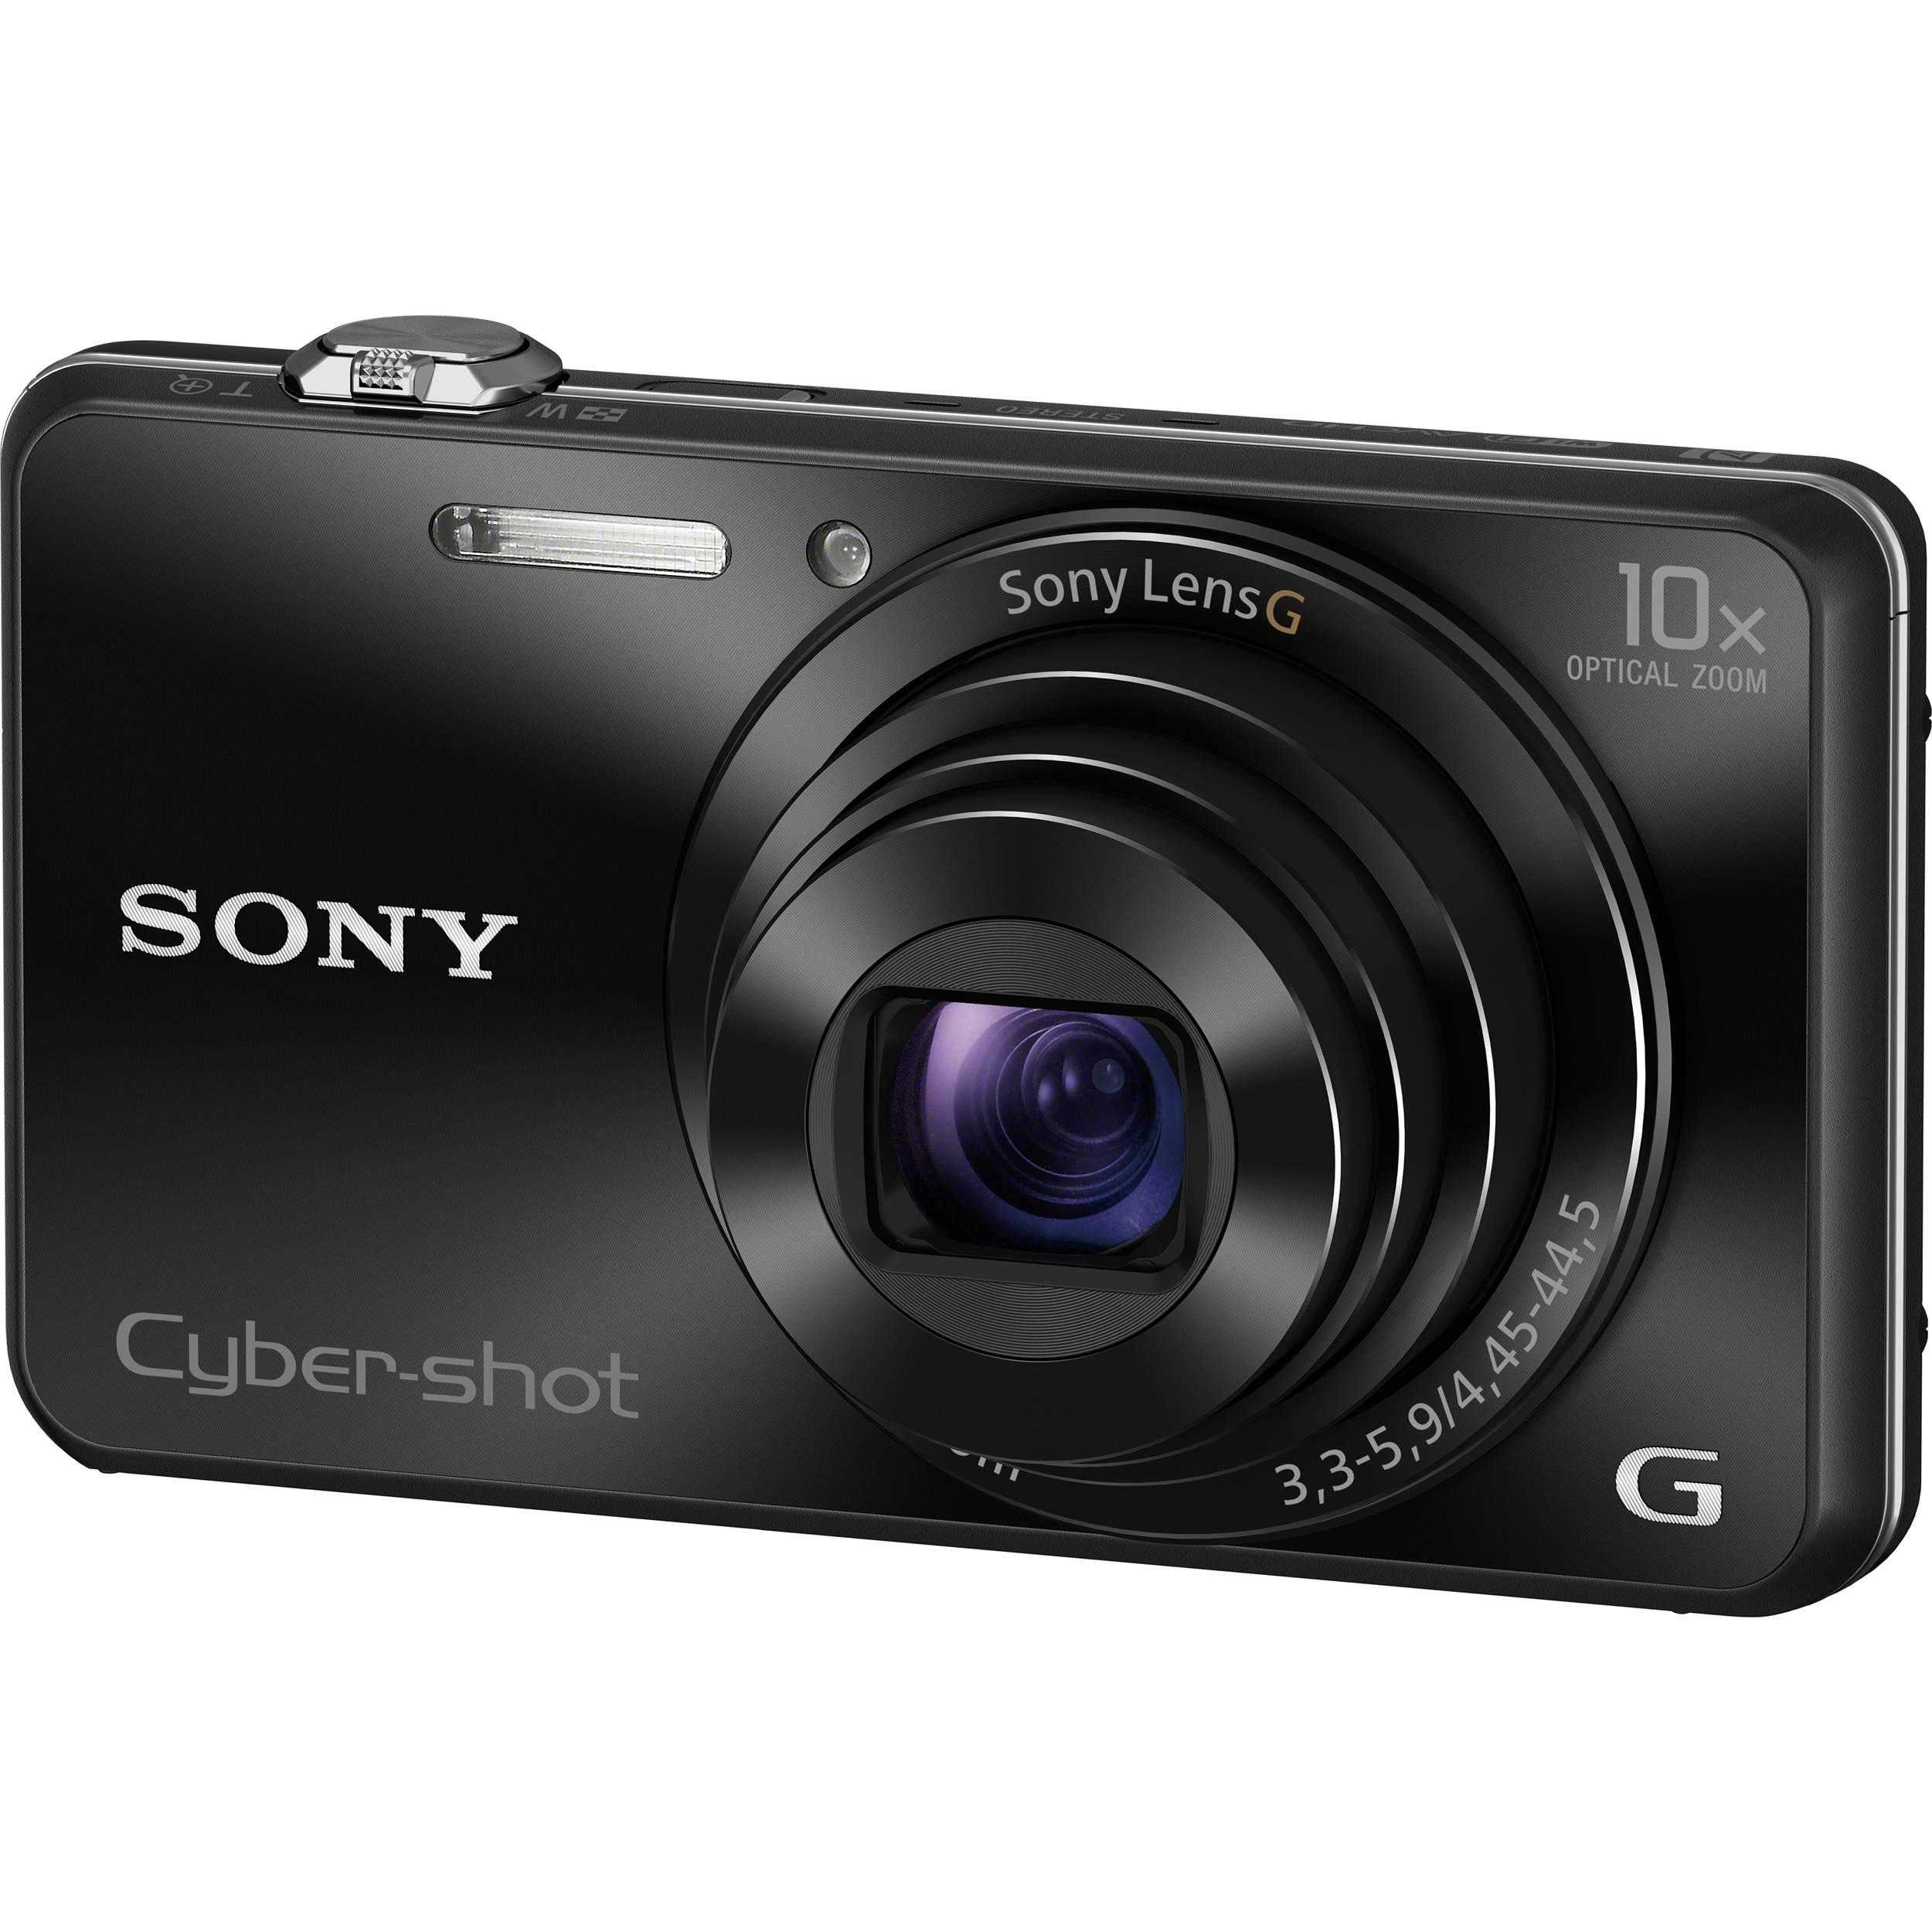 Цифровой фотоаппарат Sony DSC-J10 - подробные характеристики обзоры видео фото Цены в интернет-магазинах где можно купить цифровую фотоаппарат Sony DSC-J10